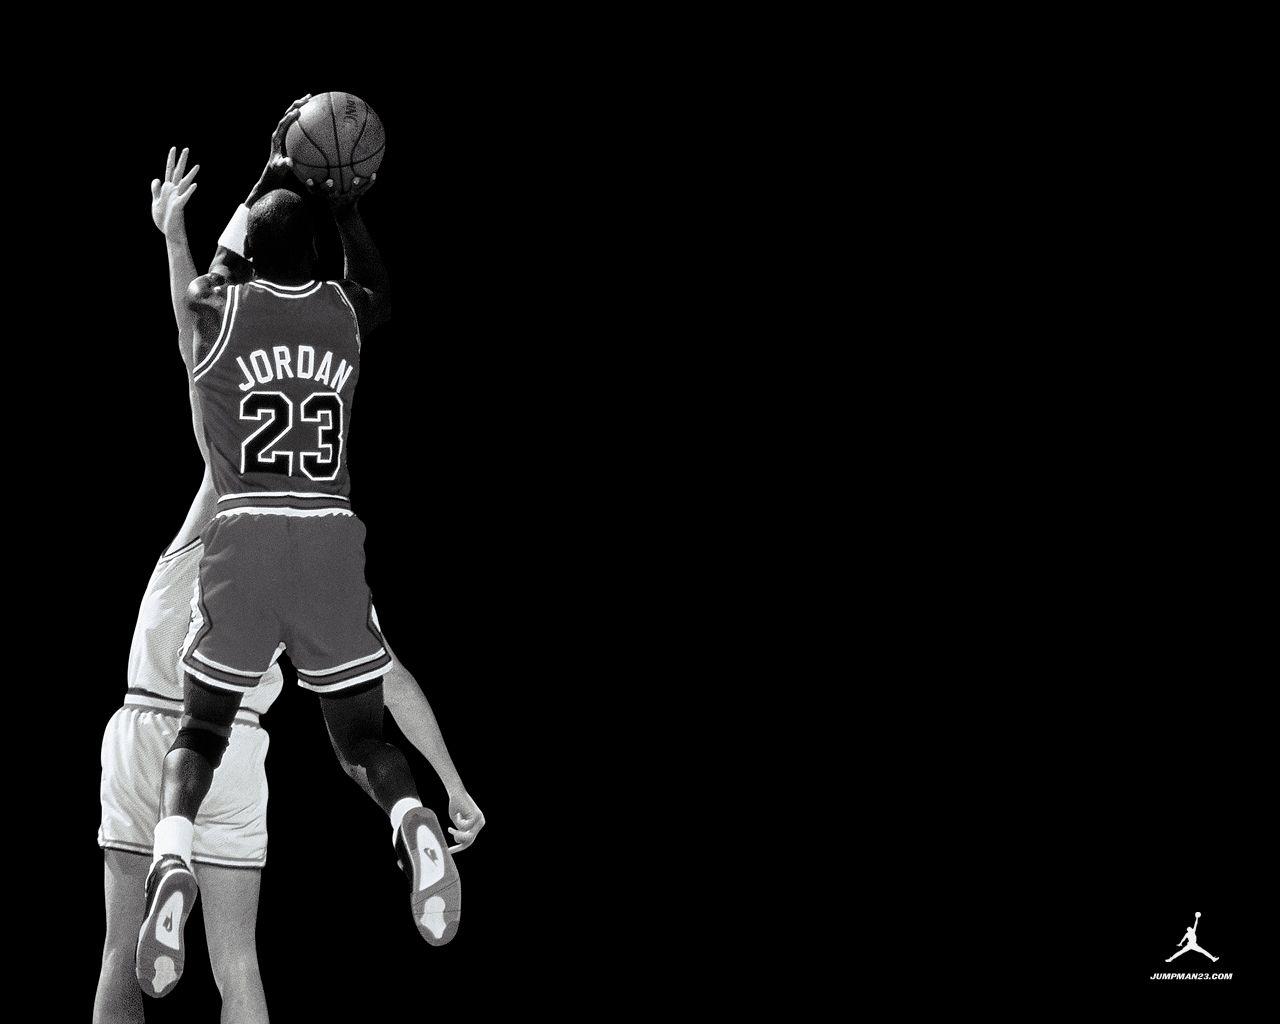 Fascinating Michael Jordan Wallpaper for iPhone 1280x1024PX